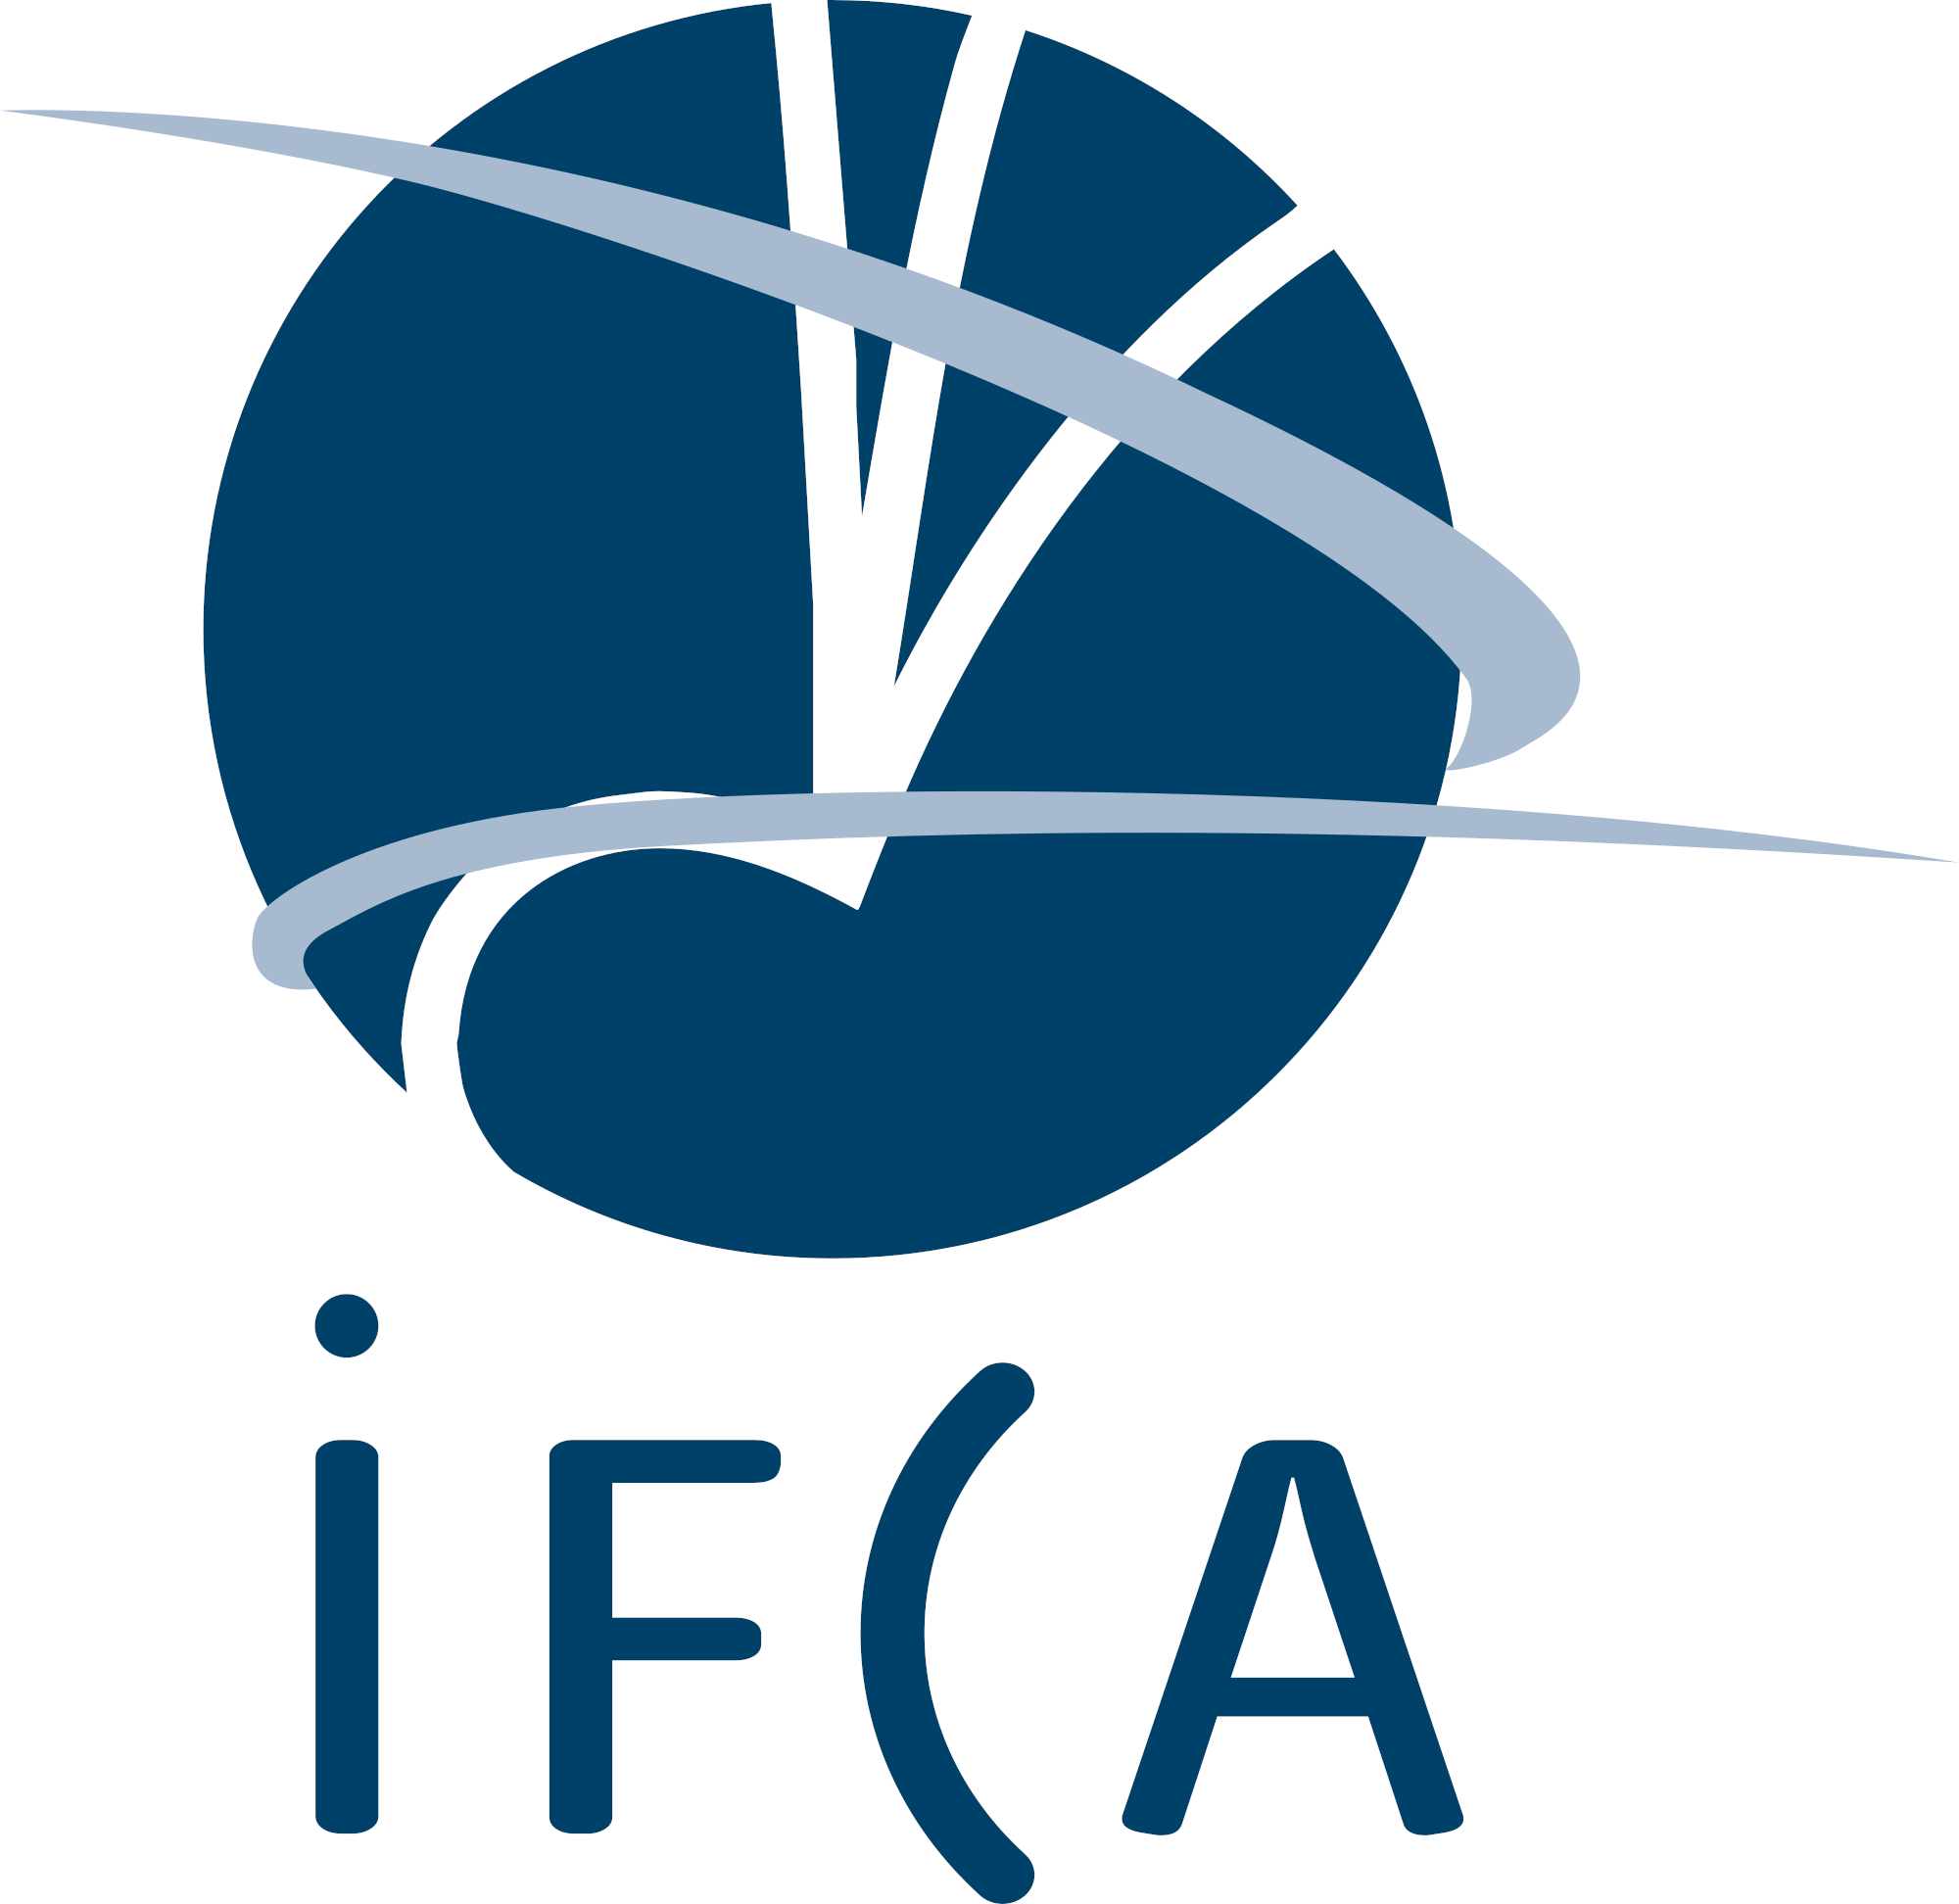 Instituto de Física de Cantabria (IFCA)